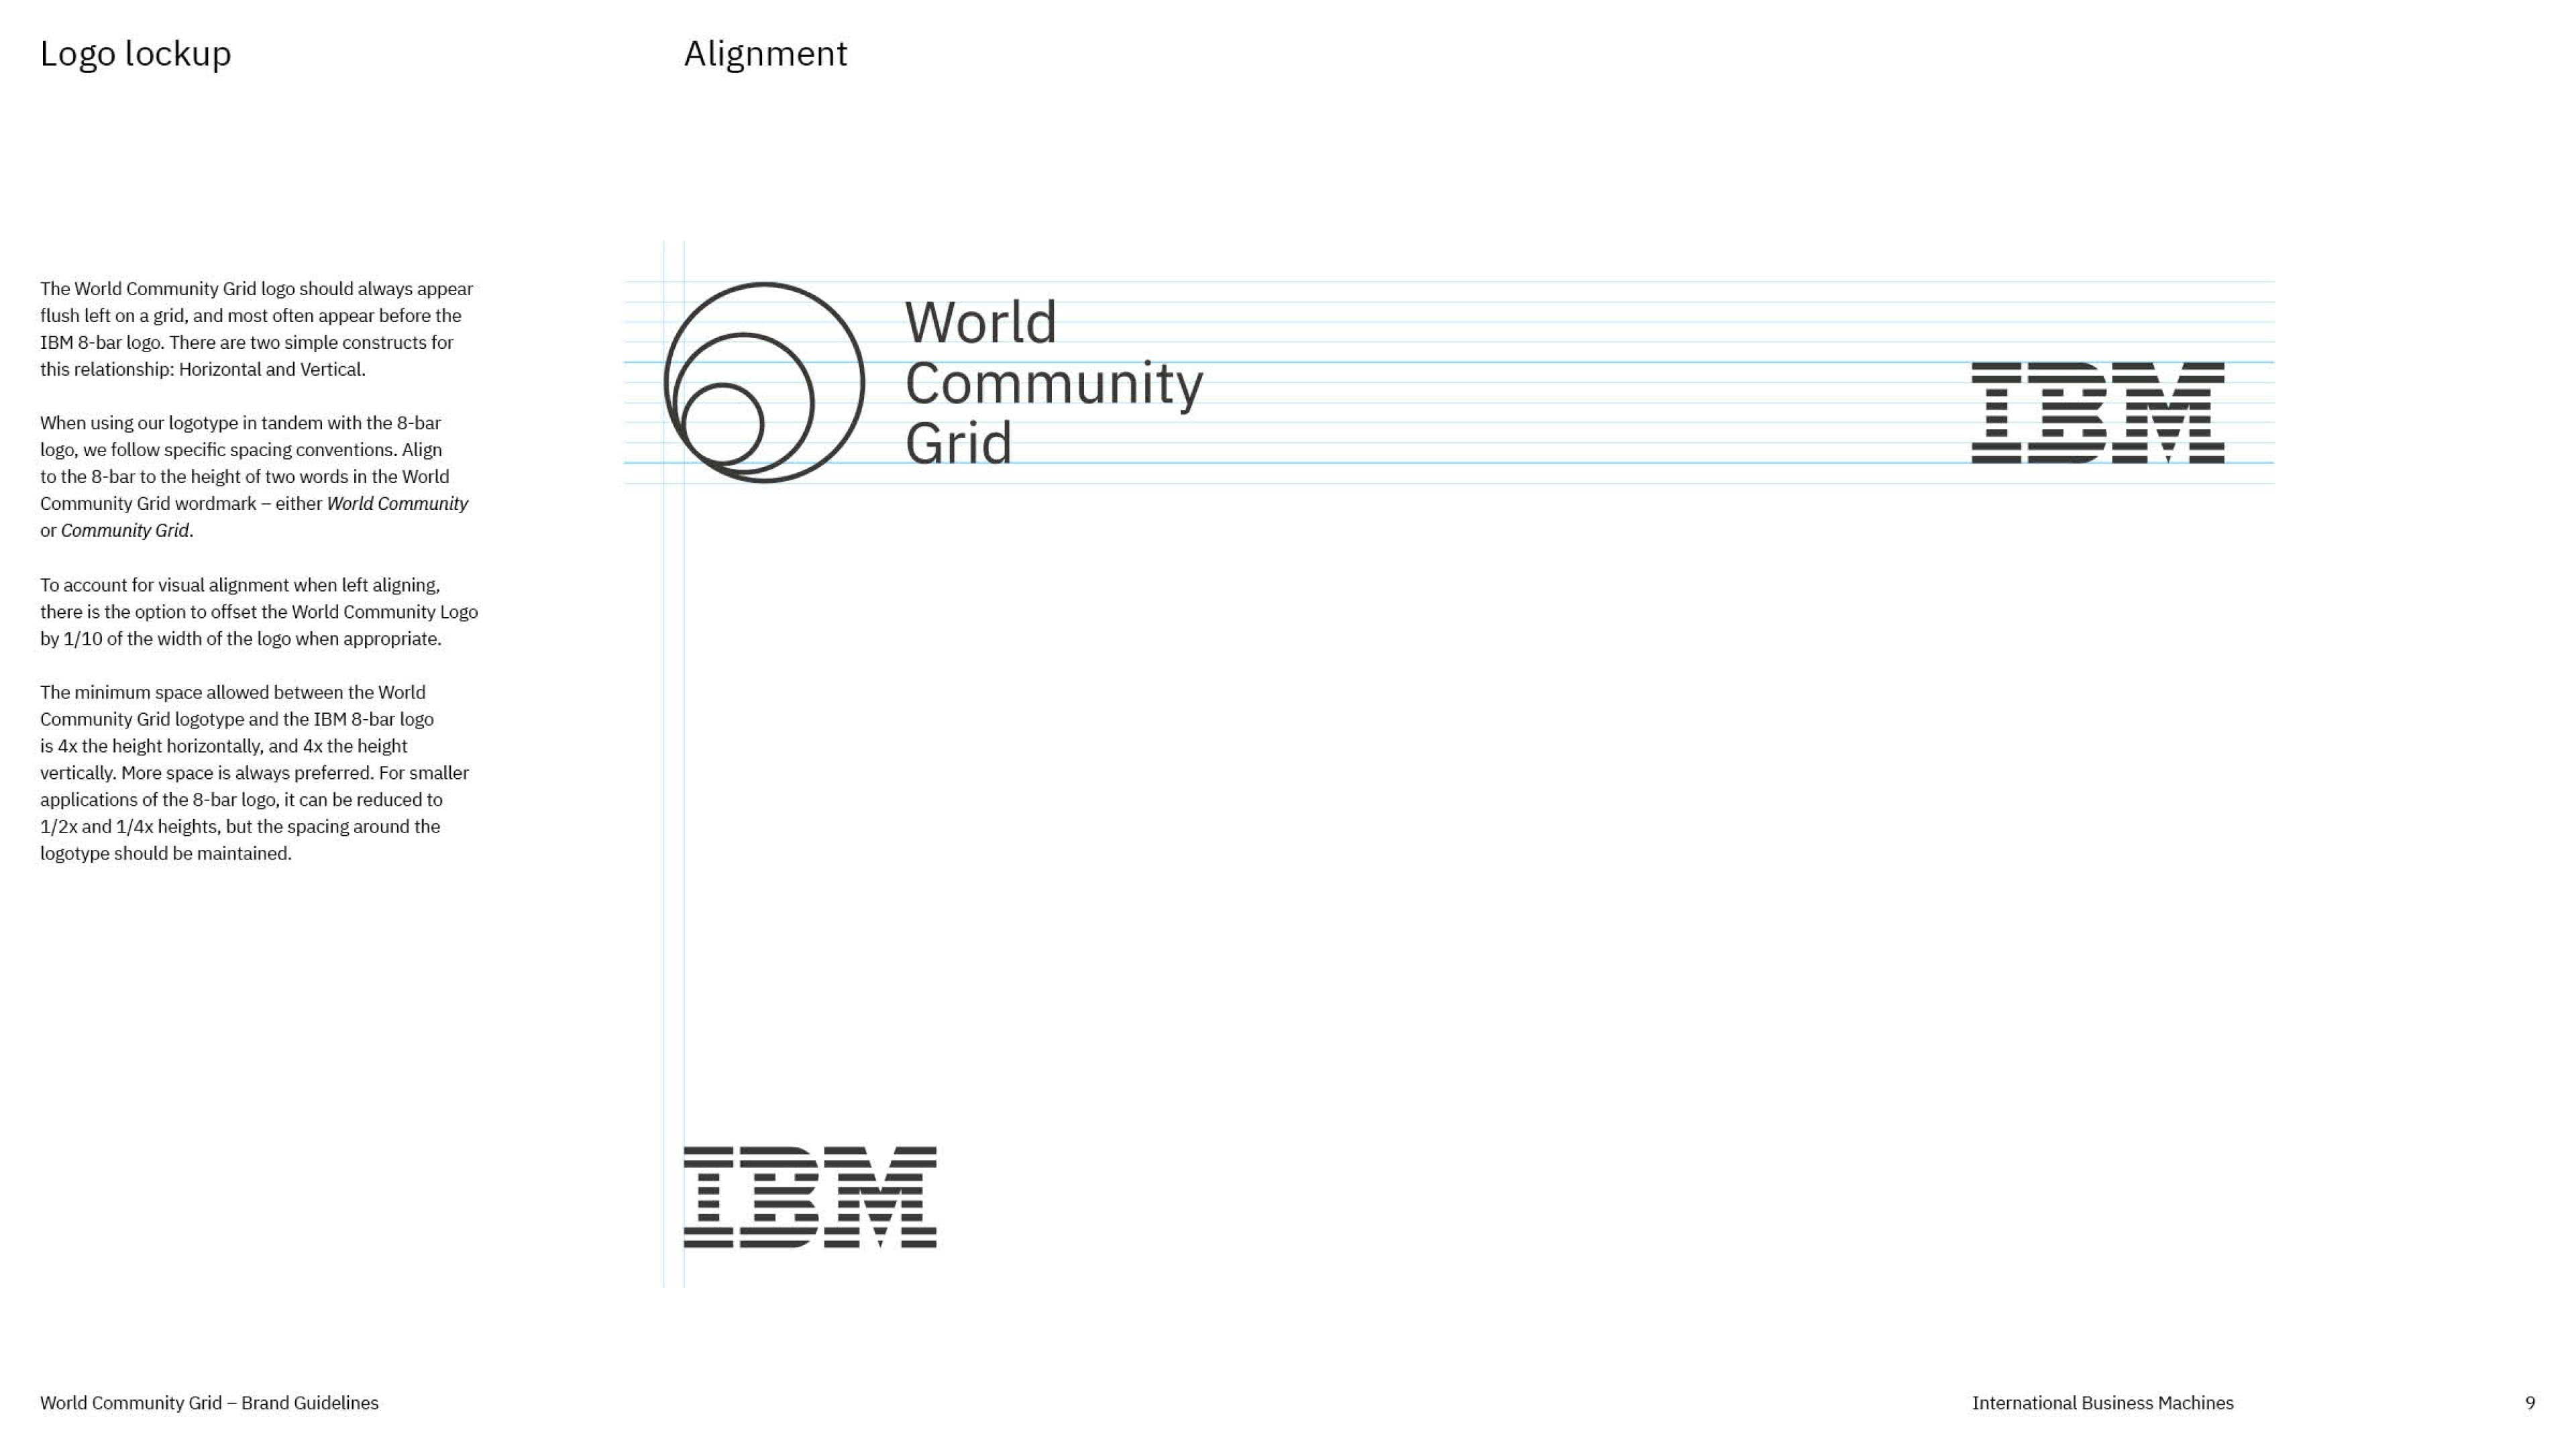 World Community Grid Brand Promise slide